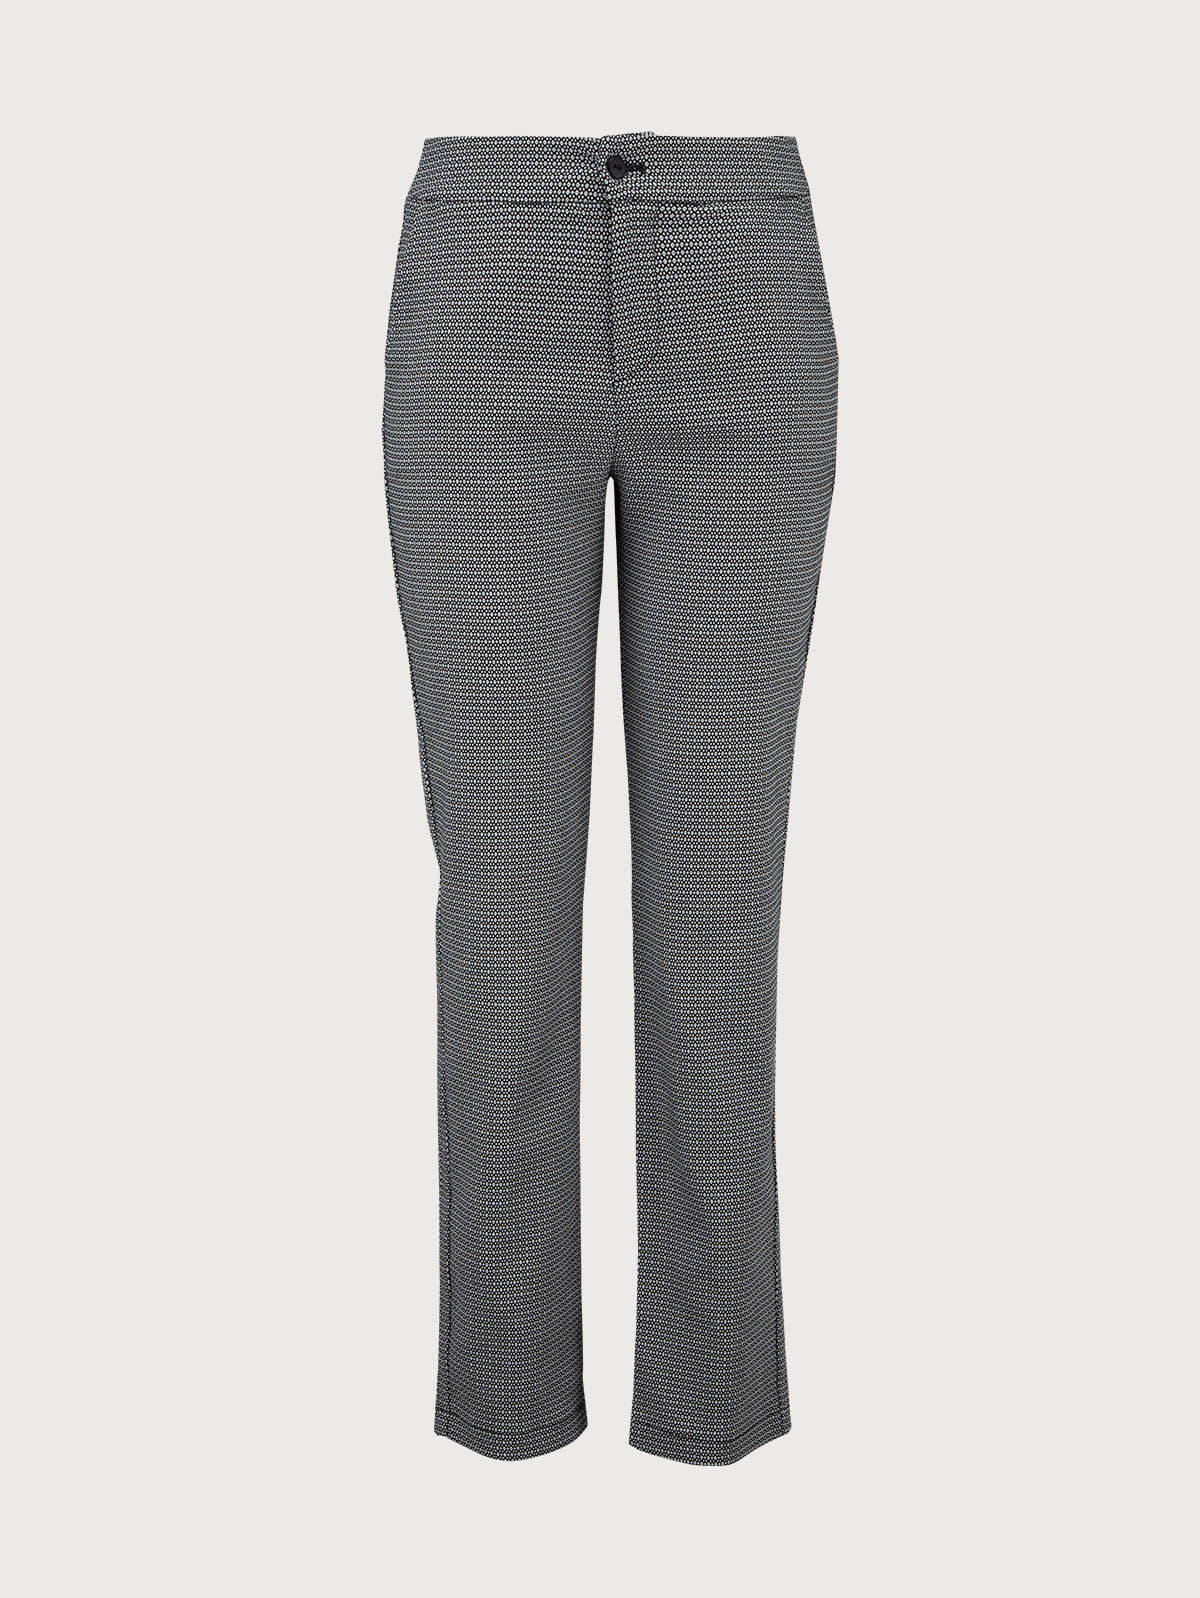 Pantalones clásicos para mujeres - OI23SN10419386